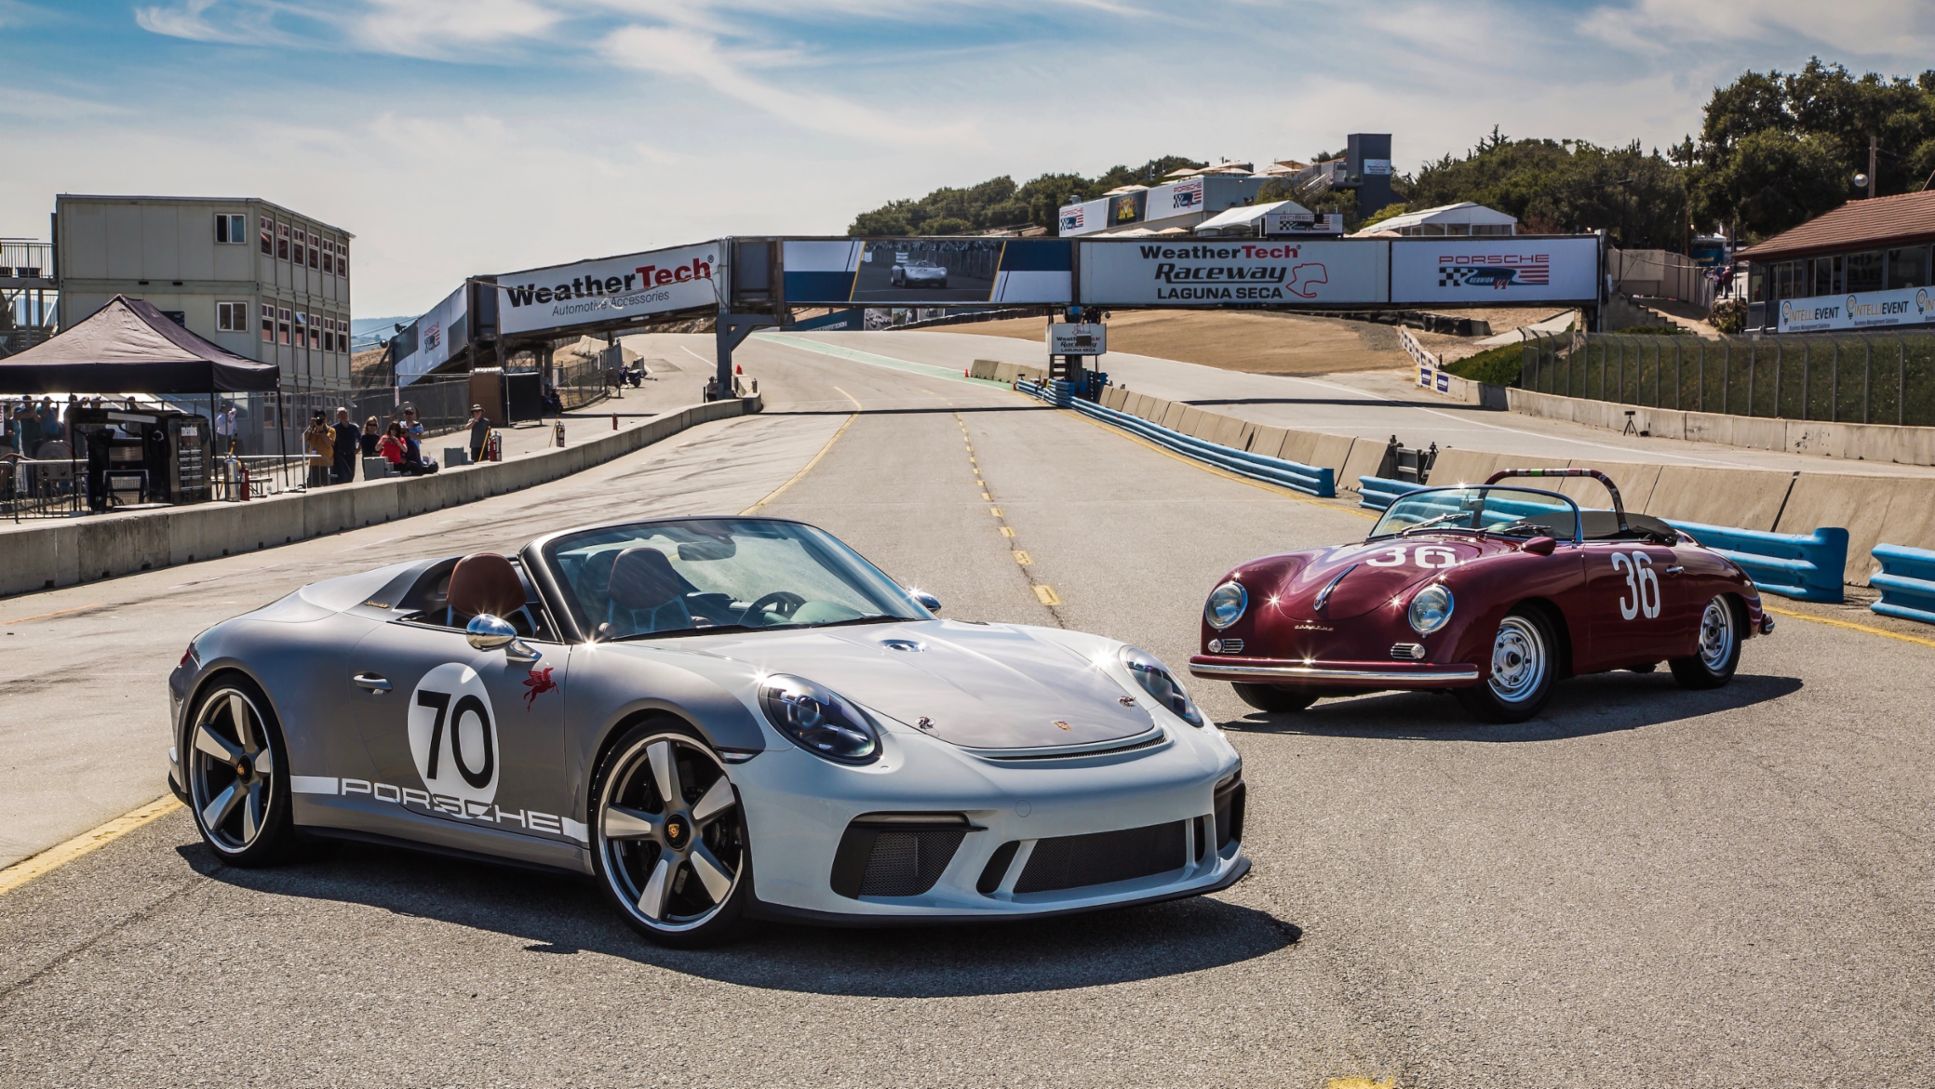 911 Speedster Concept, Rennsport Reunion VI, Weathertech Raceway Laguna Seca, 2018, Porsche AG